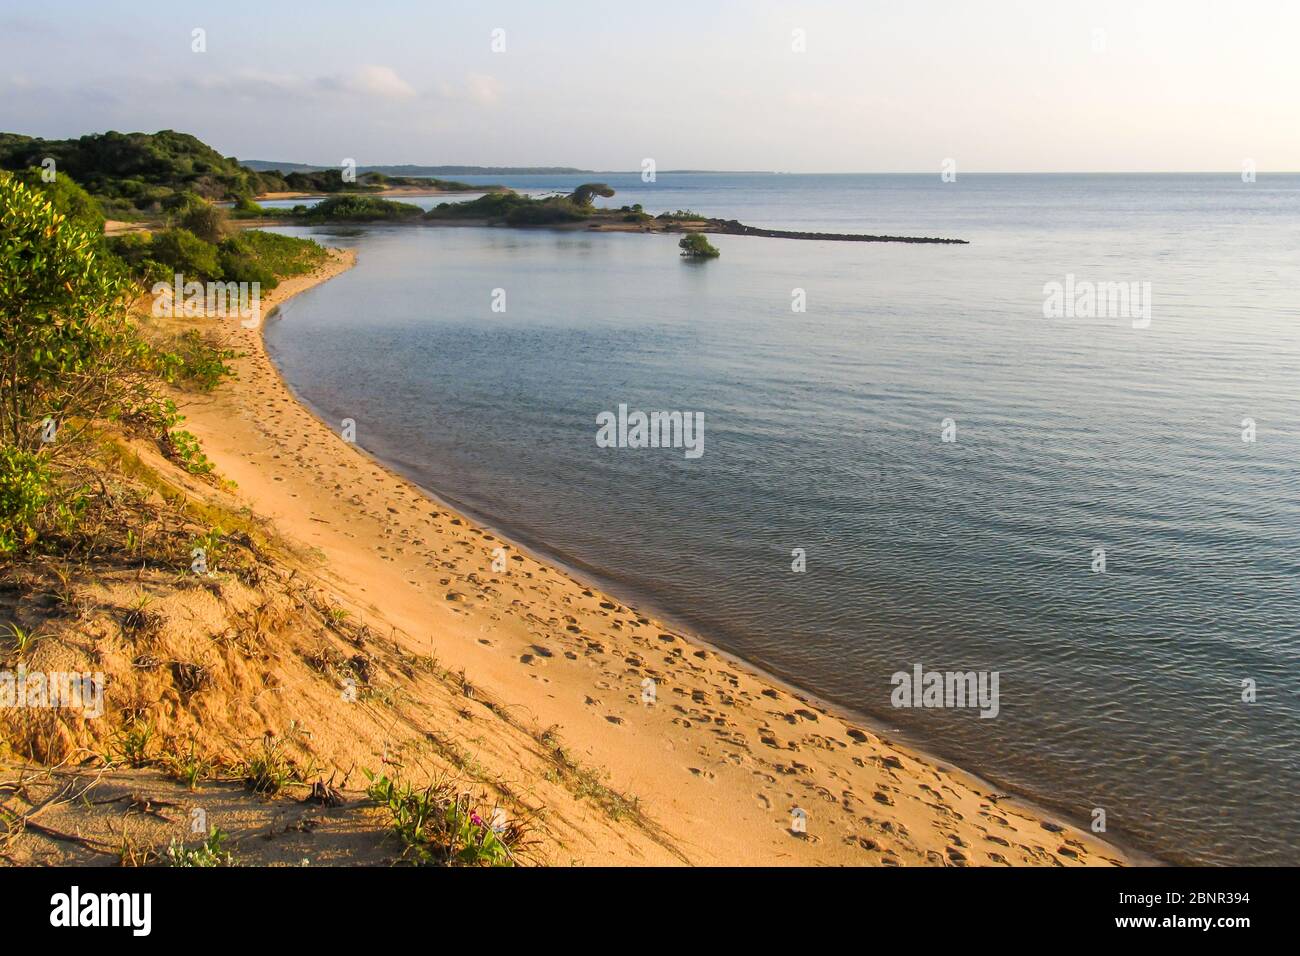 Eine geschützte Bucht mit einem schmalen goldenen Strand am späten Nachmittag an der Südküste der Insel KaNyaka im Süden Mosambiks Stockfoto